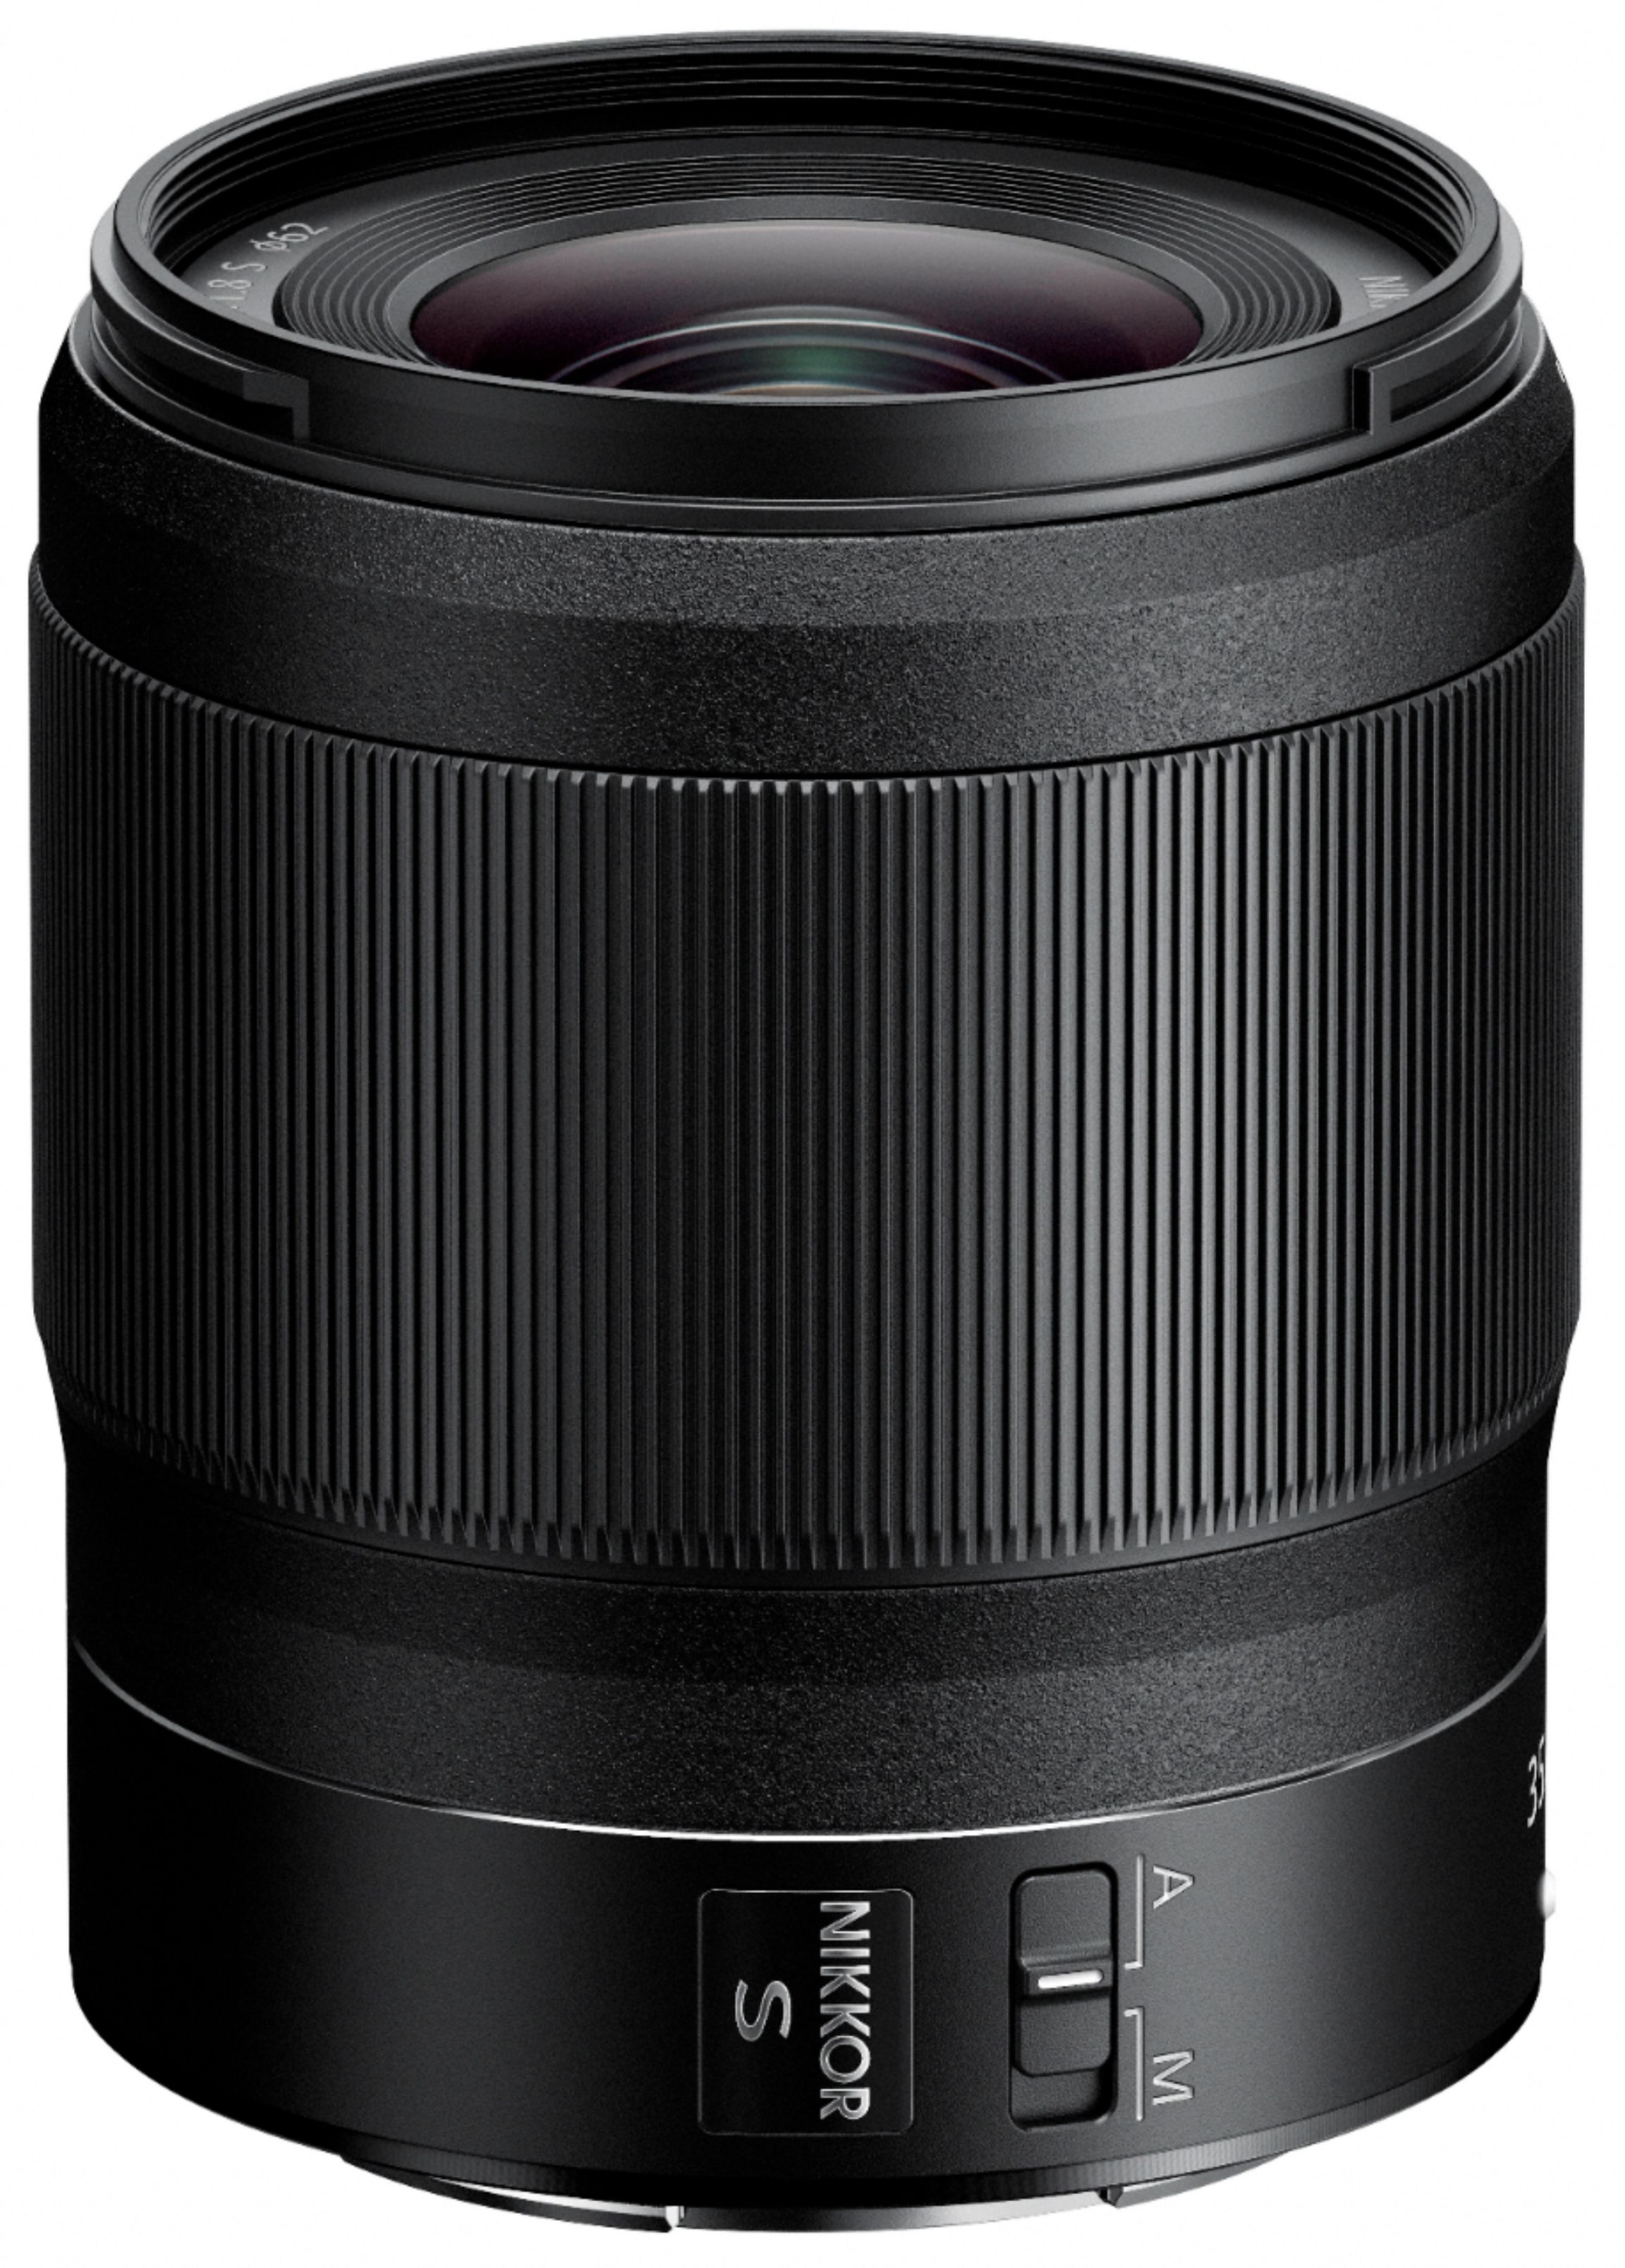 Nikkor Z 35mm F 1 8 S Standard Prime Lens For Nikon Z Cameras Black 081 Best Buy